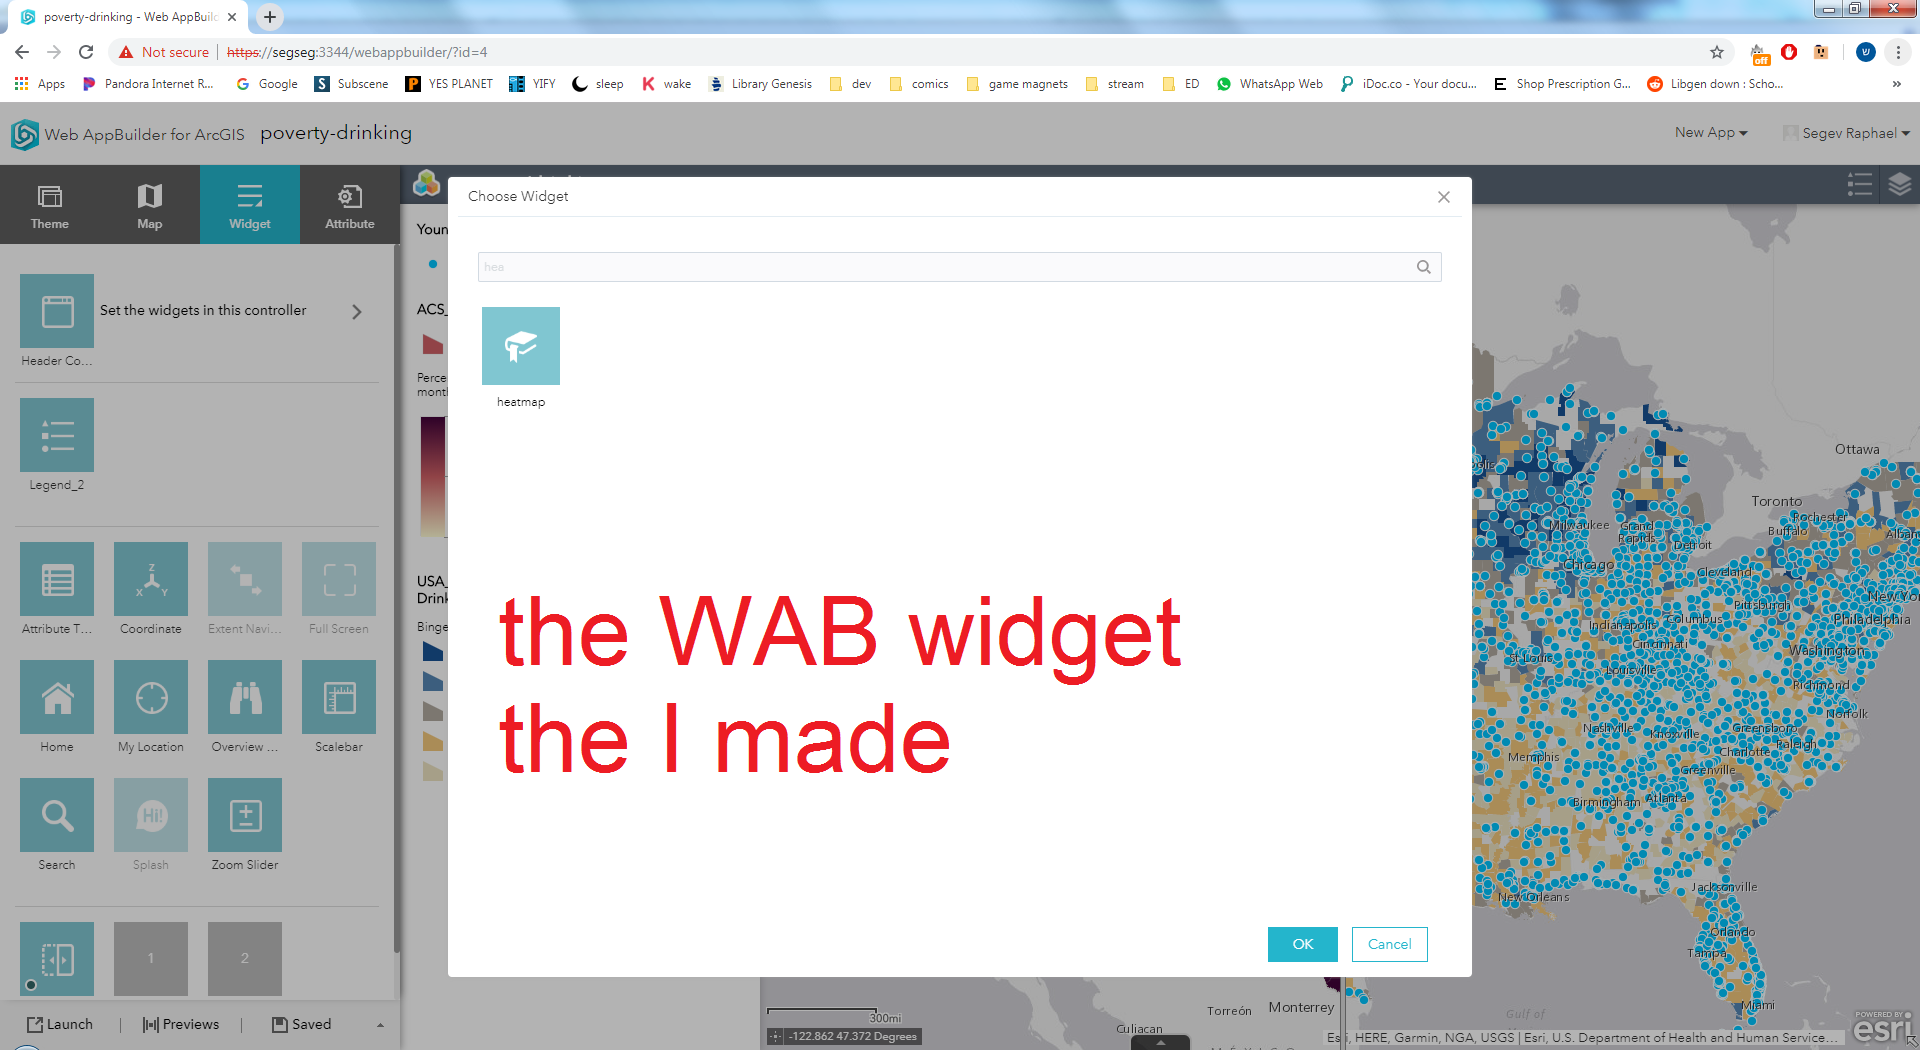 widget on WAB